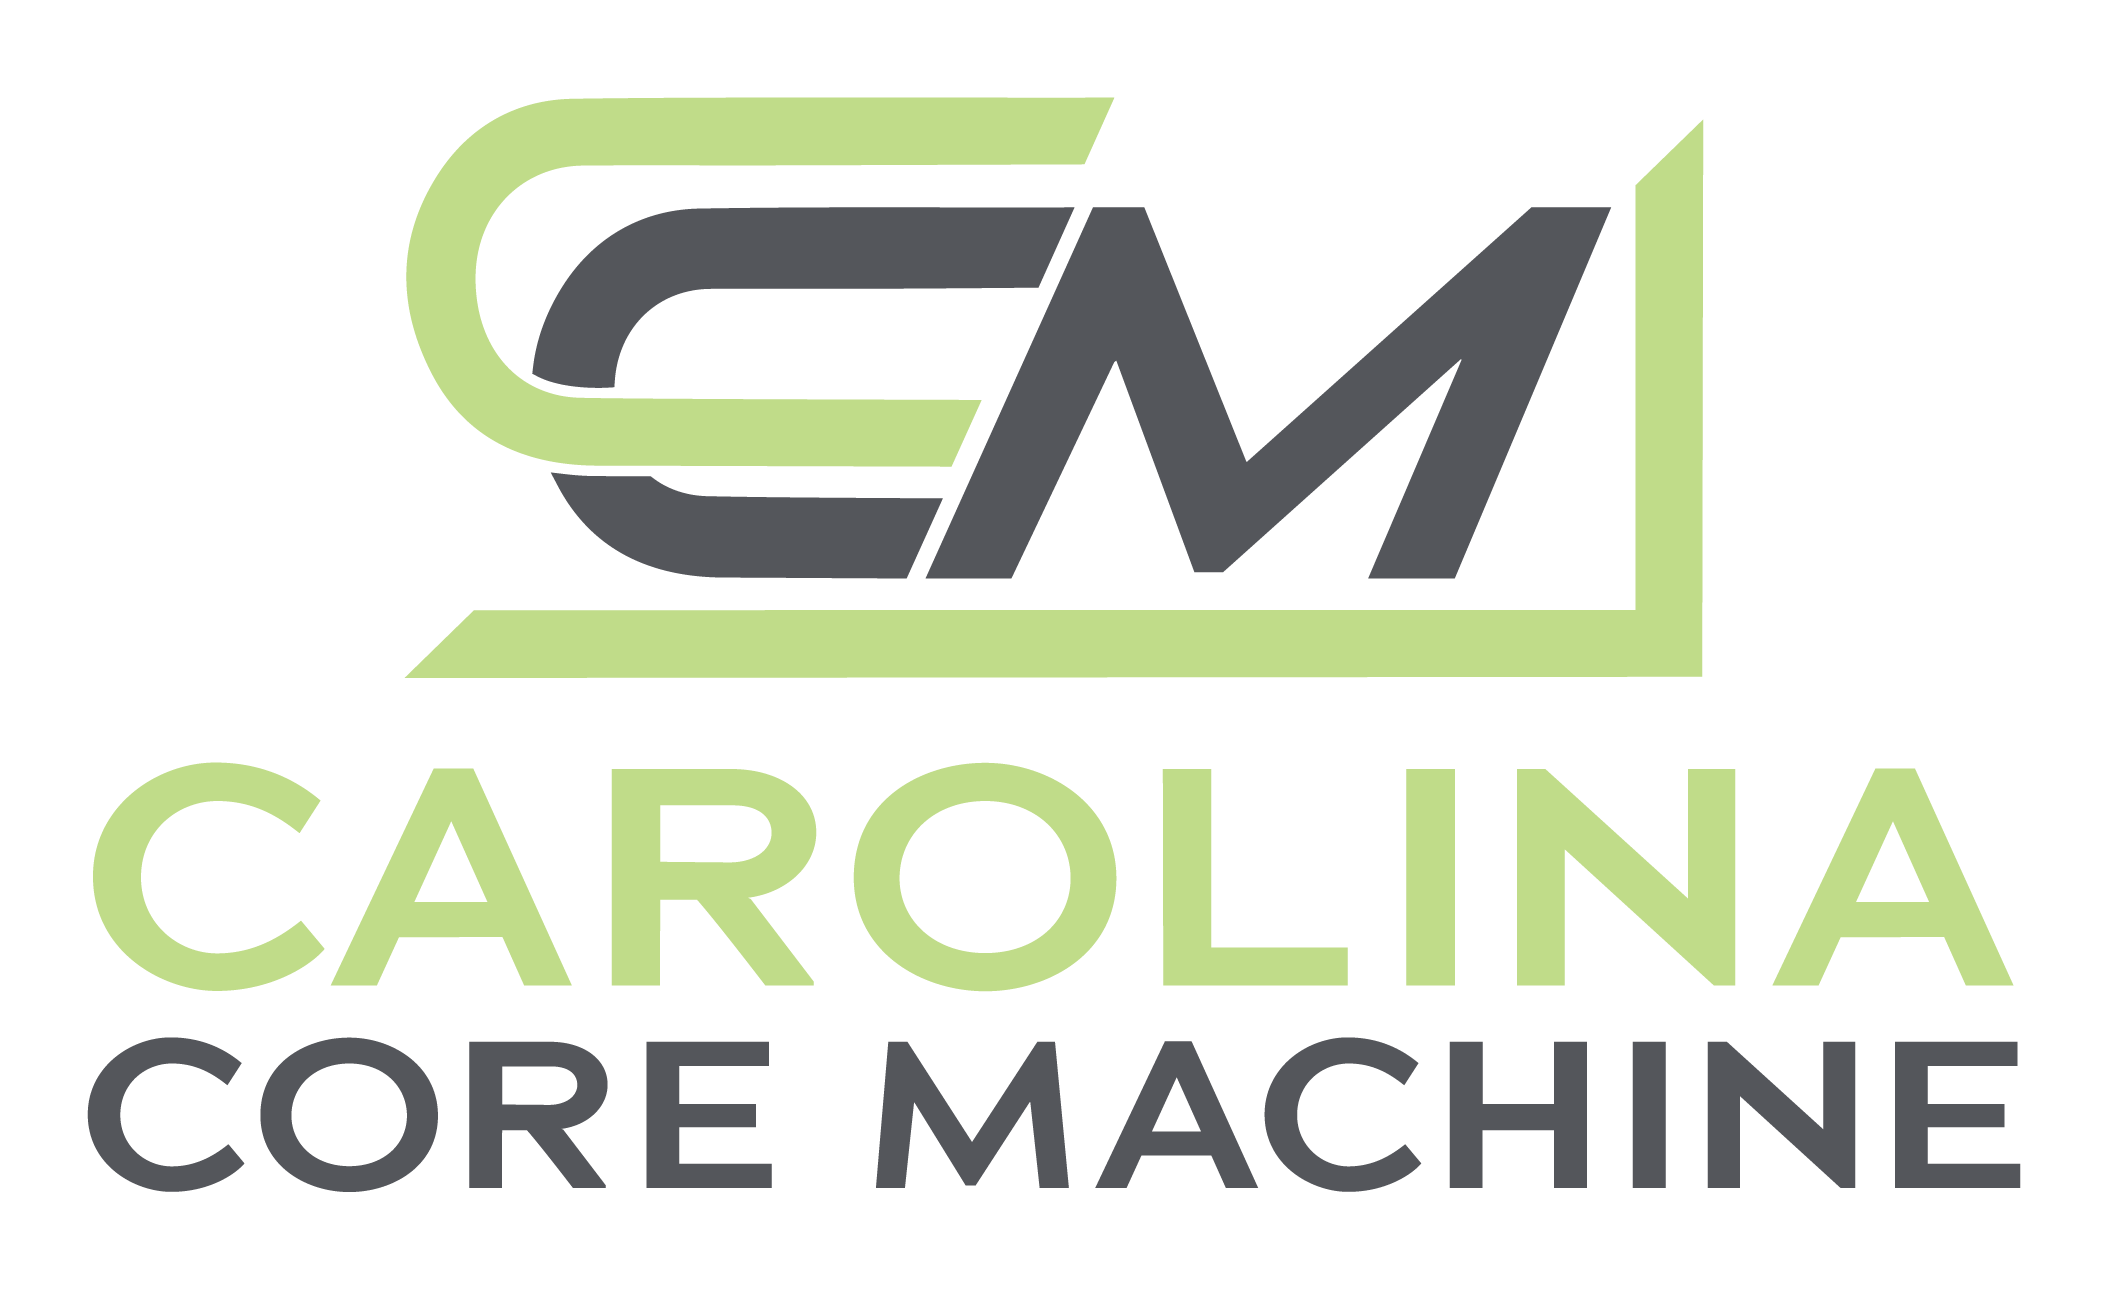 CCM. Carolina Core Machine Logo